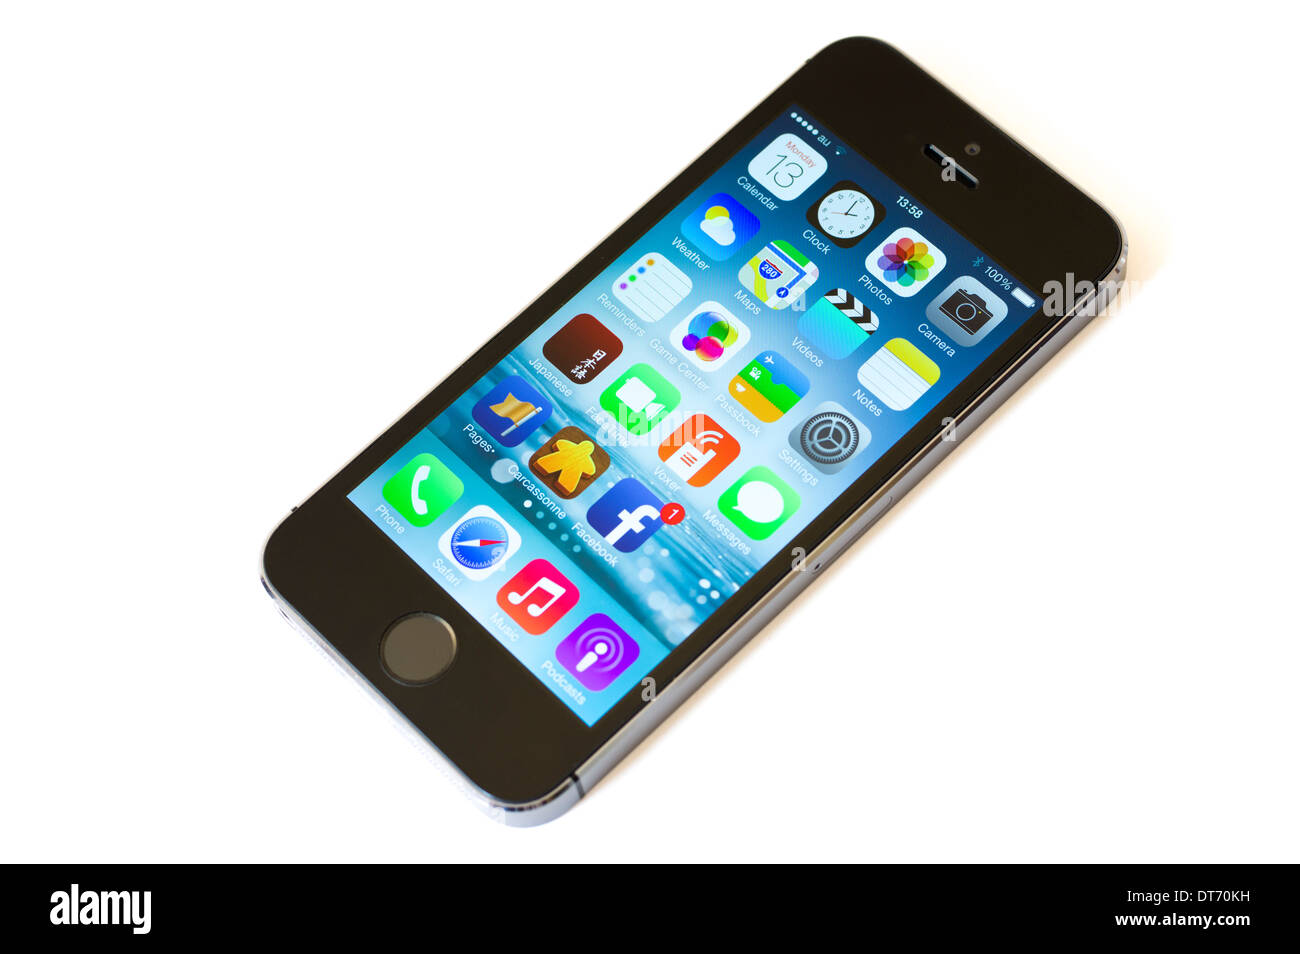 Apple iPhone 5s smart phone progettato da Jonathan Ive, include la funzionalità di riconoscimento delle impronte digitali per sbloccare Foto Stock